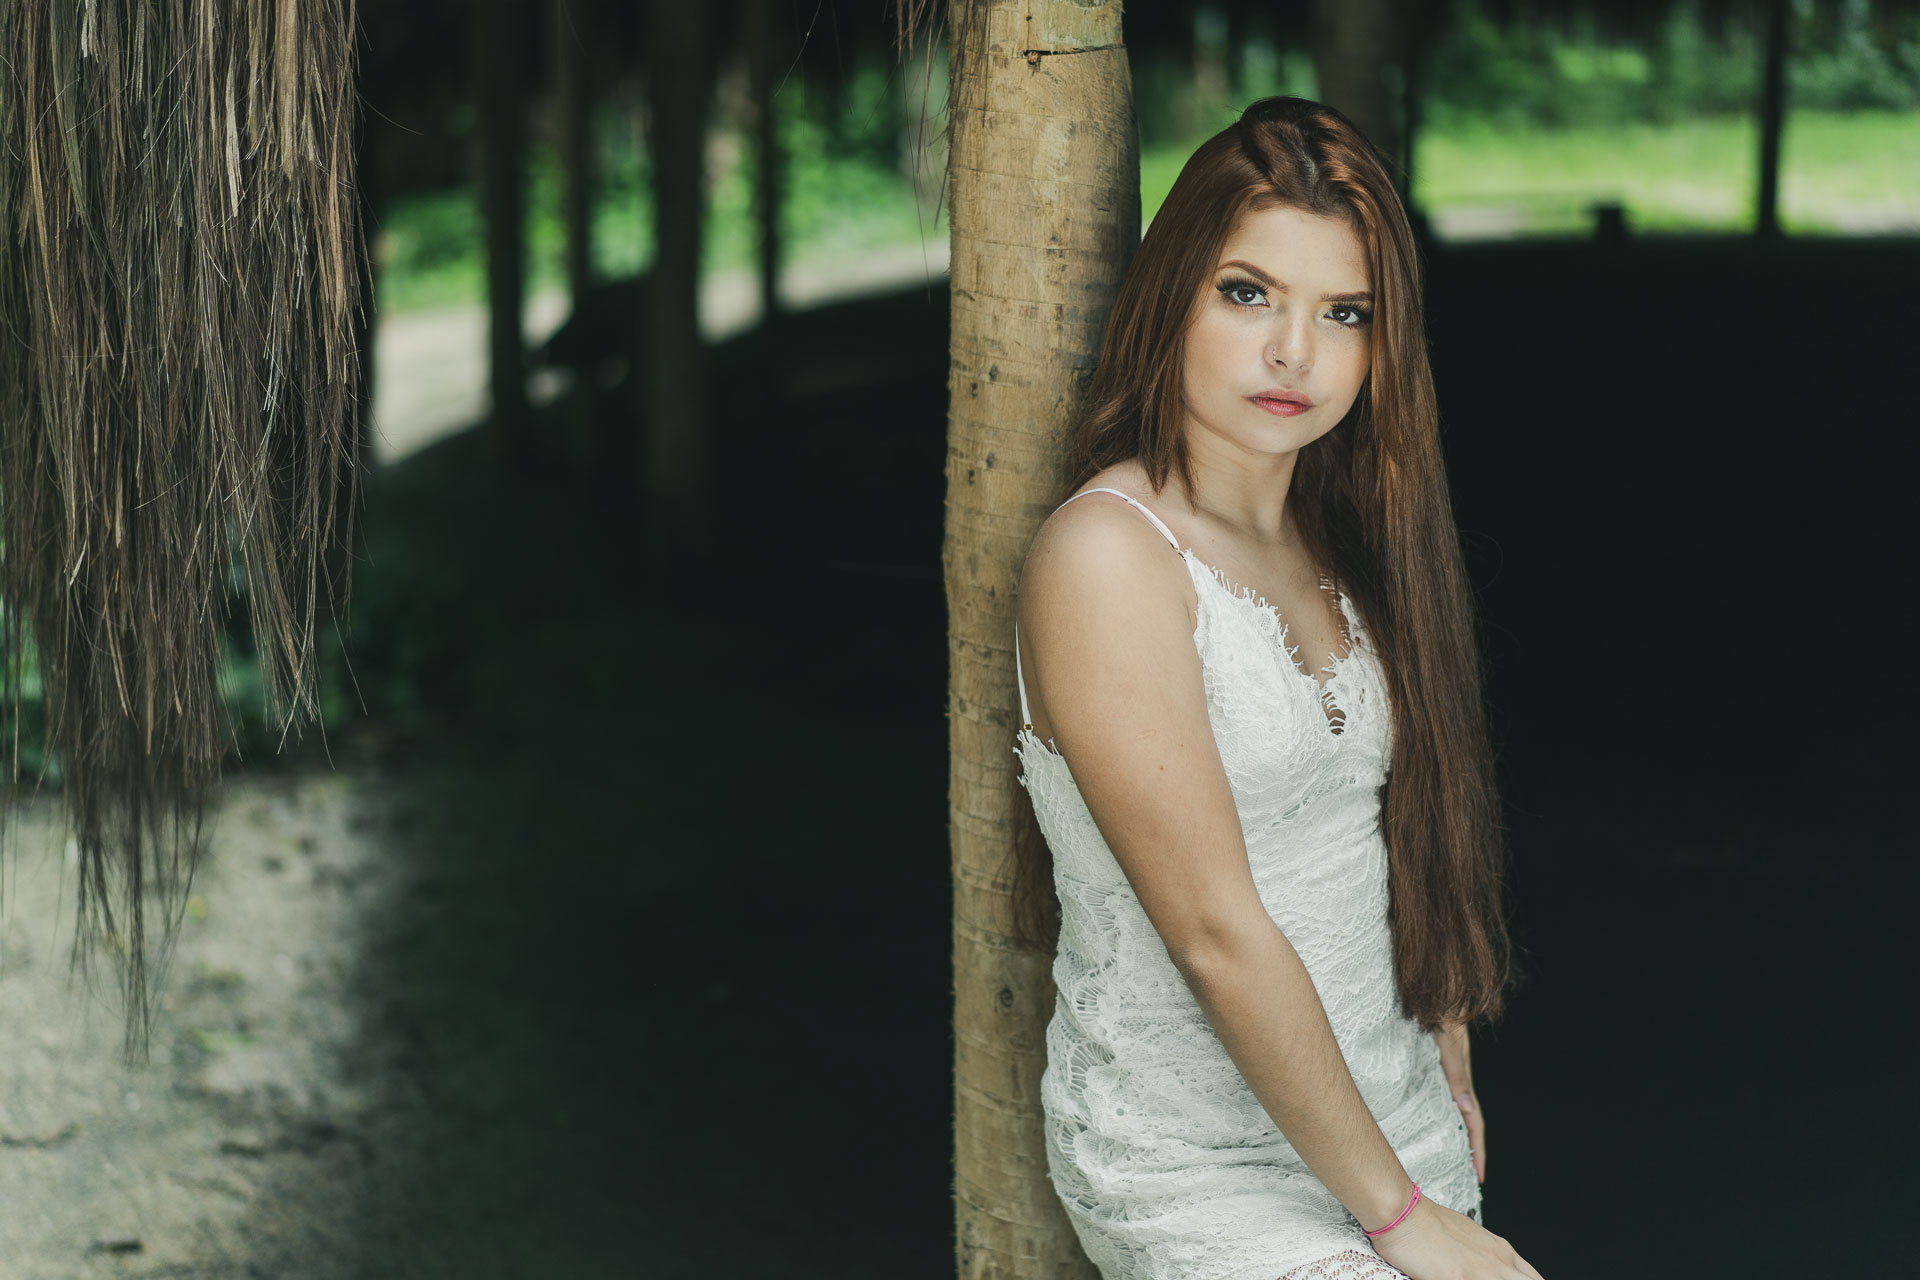 modelo ruiva de vestido de renda branca apoiada no tronco de madeira da oca do parque laje com o fundo escuro aparencia séria e cabelo longo